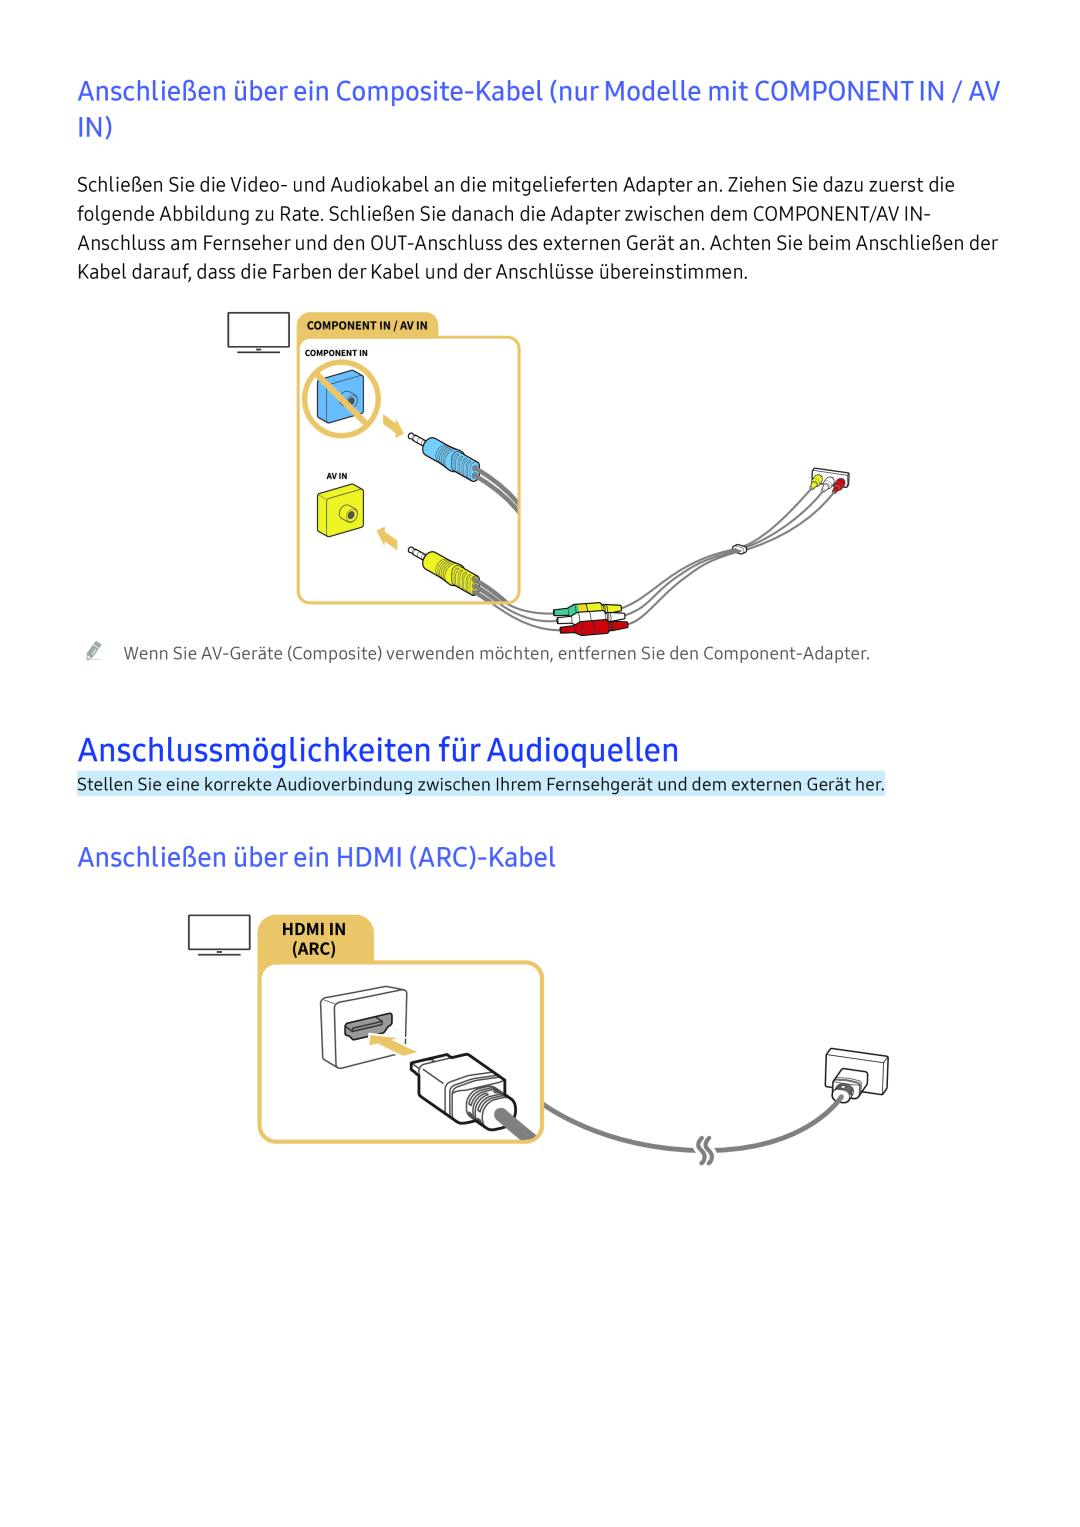 Samsung UE55K6379SUXZG, UE40K6379SUXZG manual Anschlussmöglichkeiten für Audioquellen, Anschließen über ein HDMI ARC-Kabel 